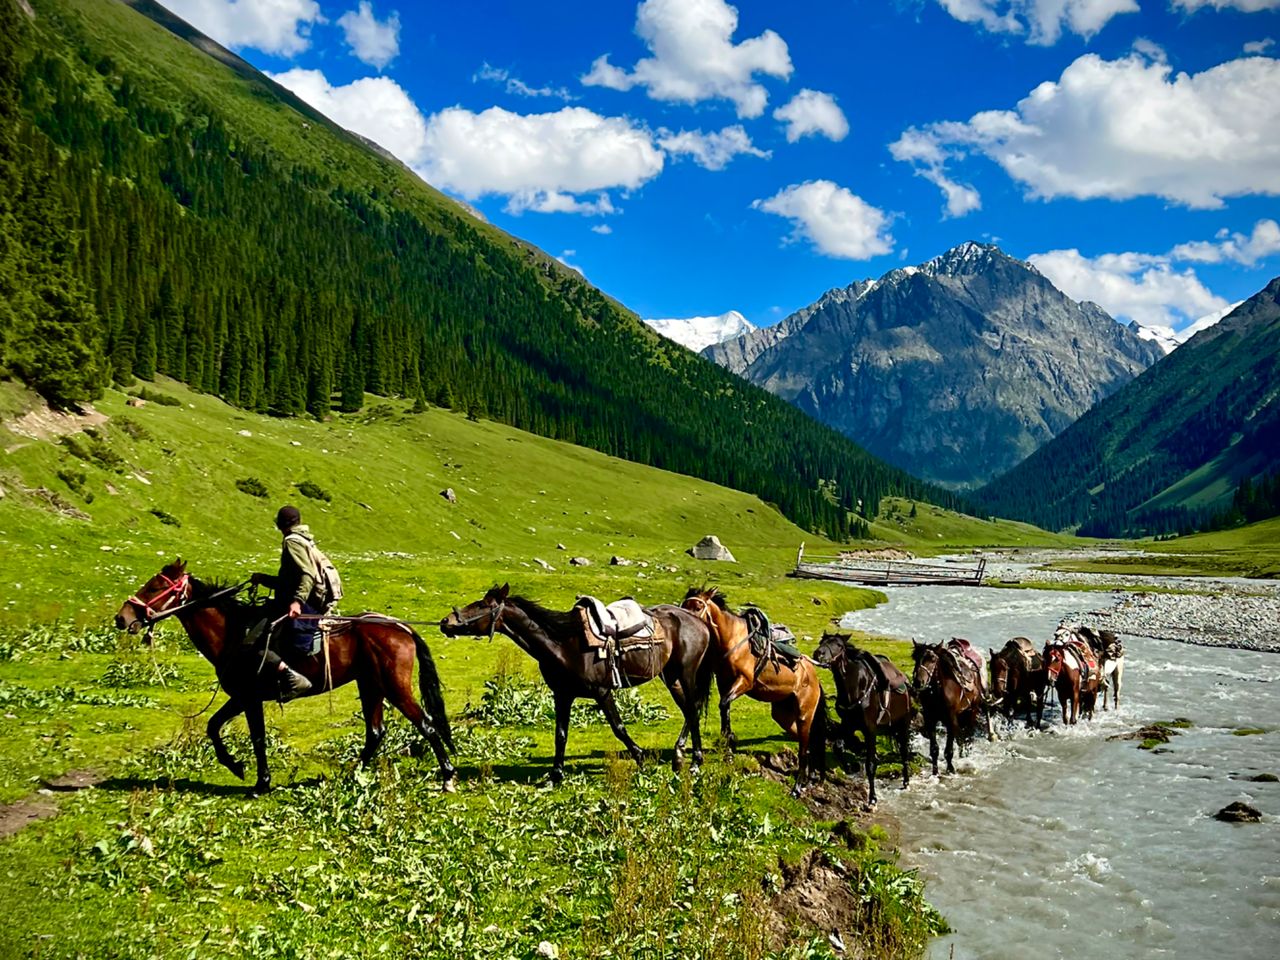 Киргизская Патагония (11 дней / 10 ночей) | Цена 1290€, отзывы, описание экскурсии